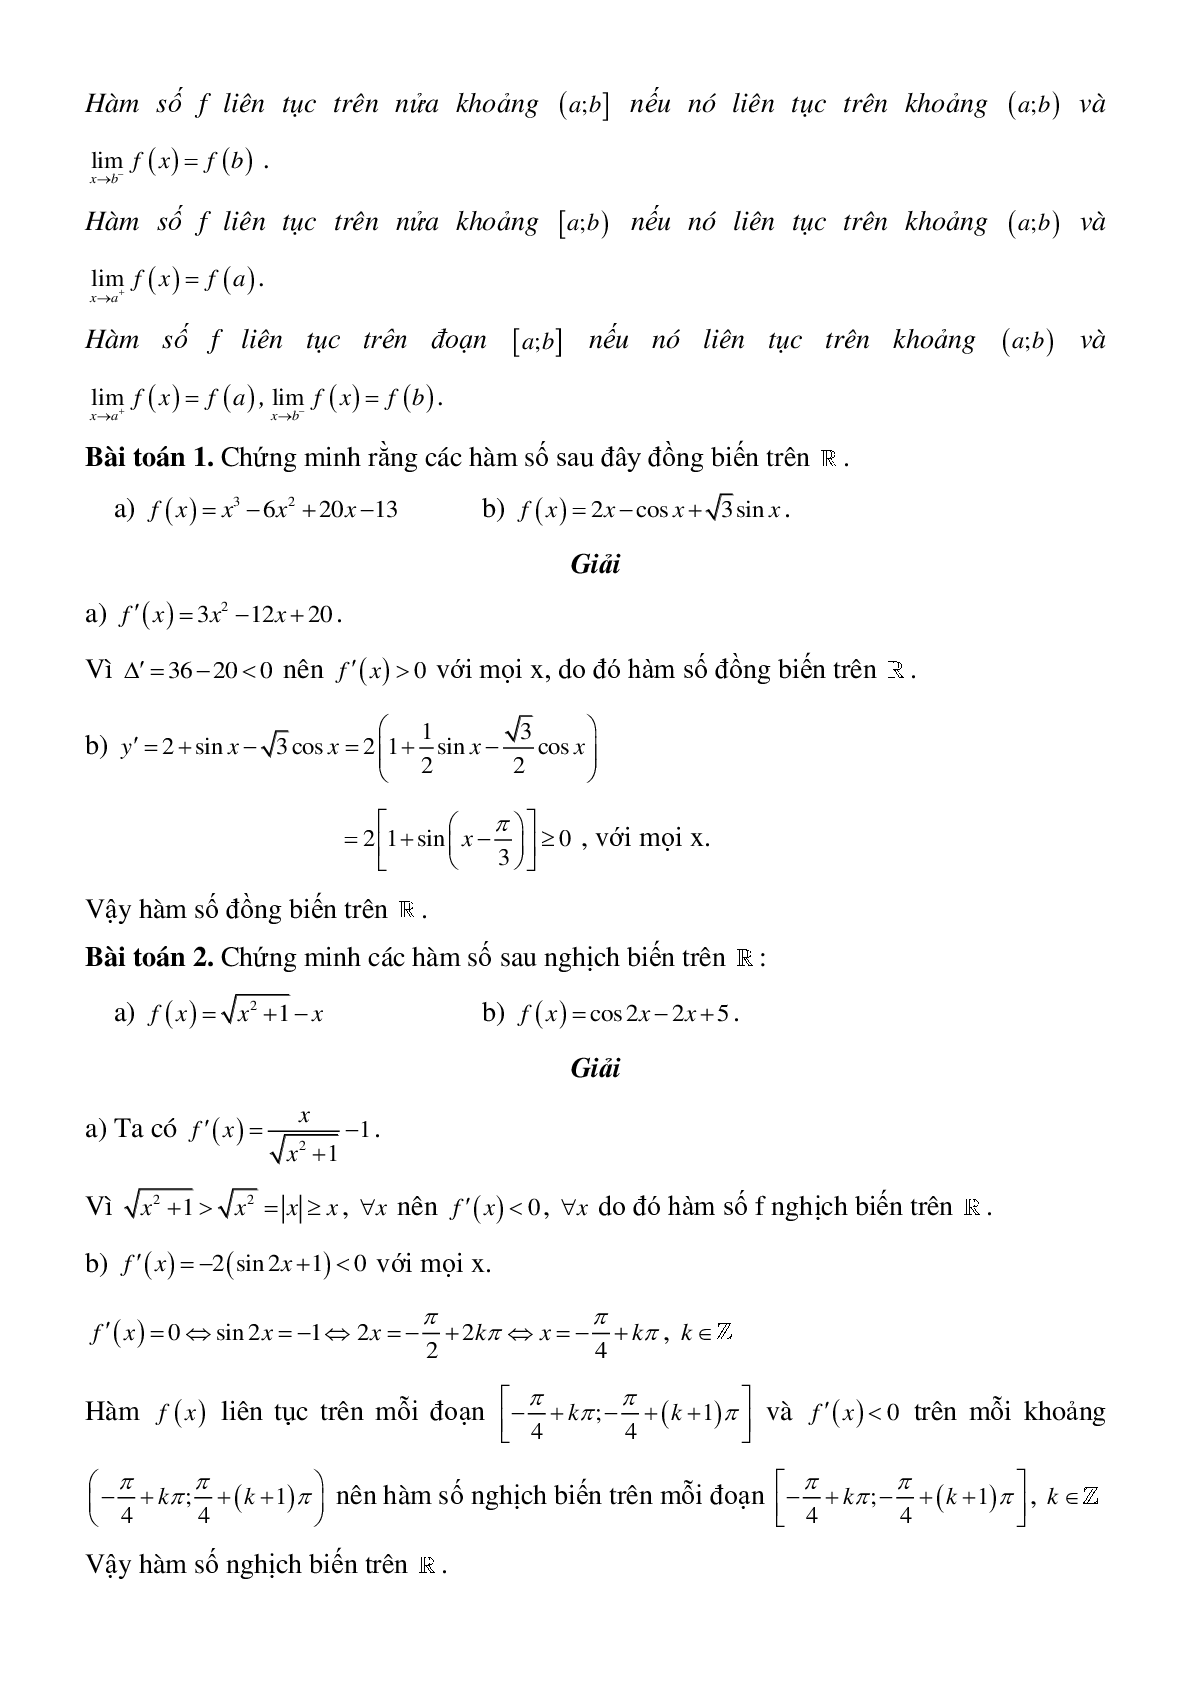 Tính đơn điệu của hàm số - Ôn thi THPT QG môn Toán (trang 9)